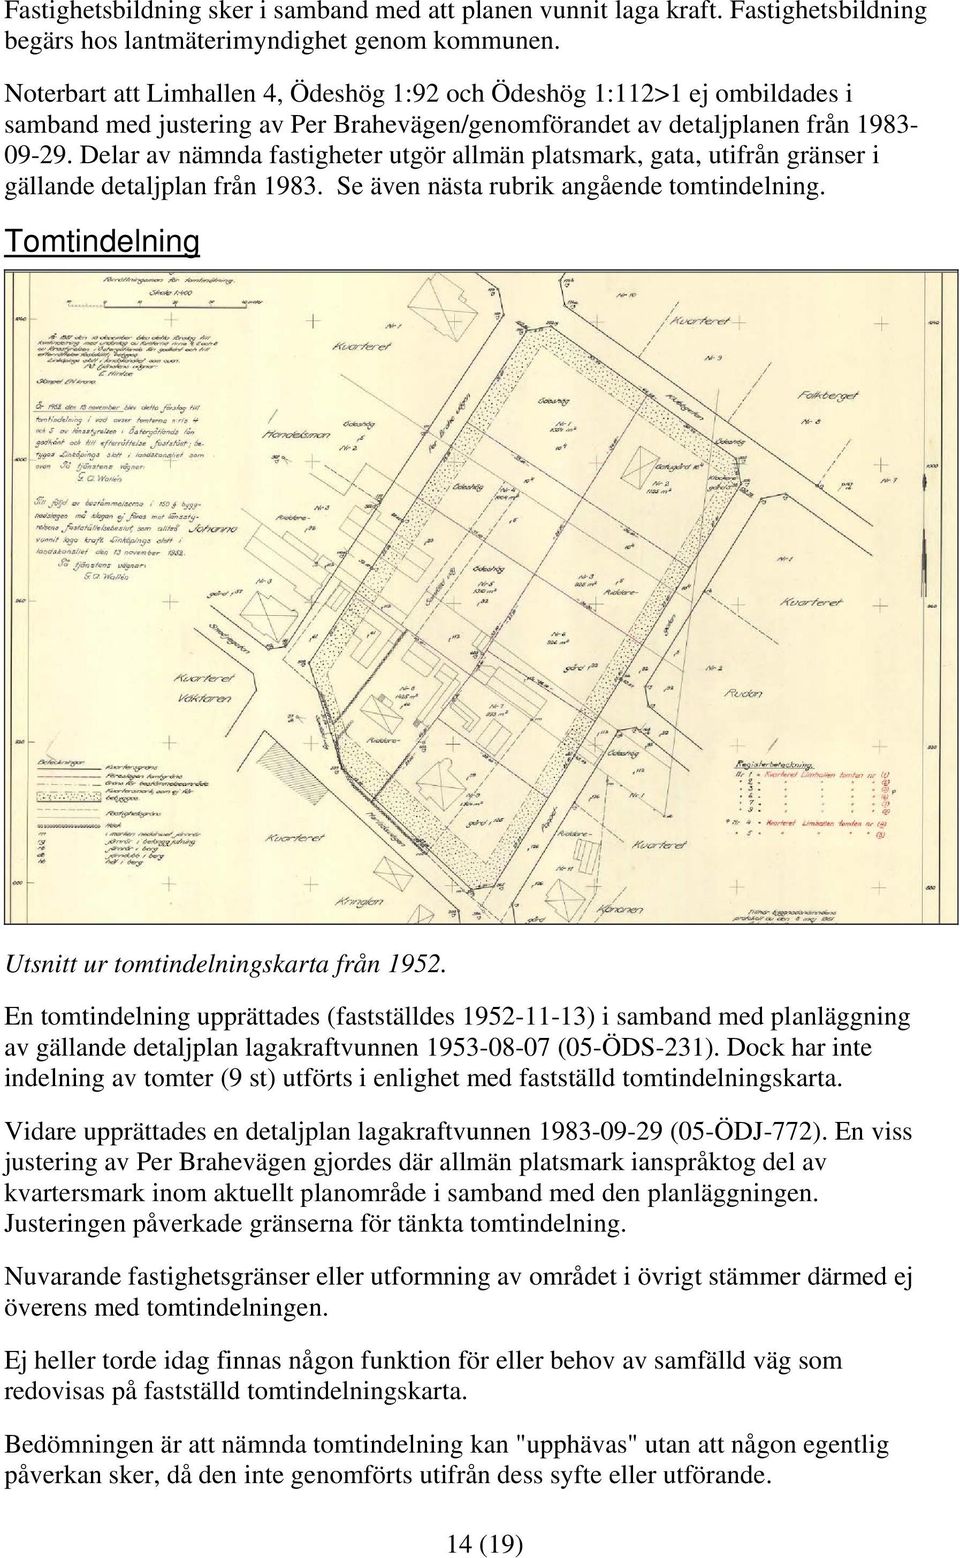 Delar av nämnda fastigheter utgör allmän platsmark, gata, utifrån gränser i gällande detaljplan från 1983. Se även nästa rubrik angående tomtindelning.